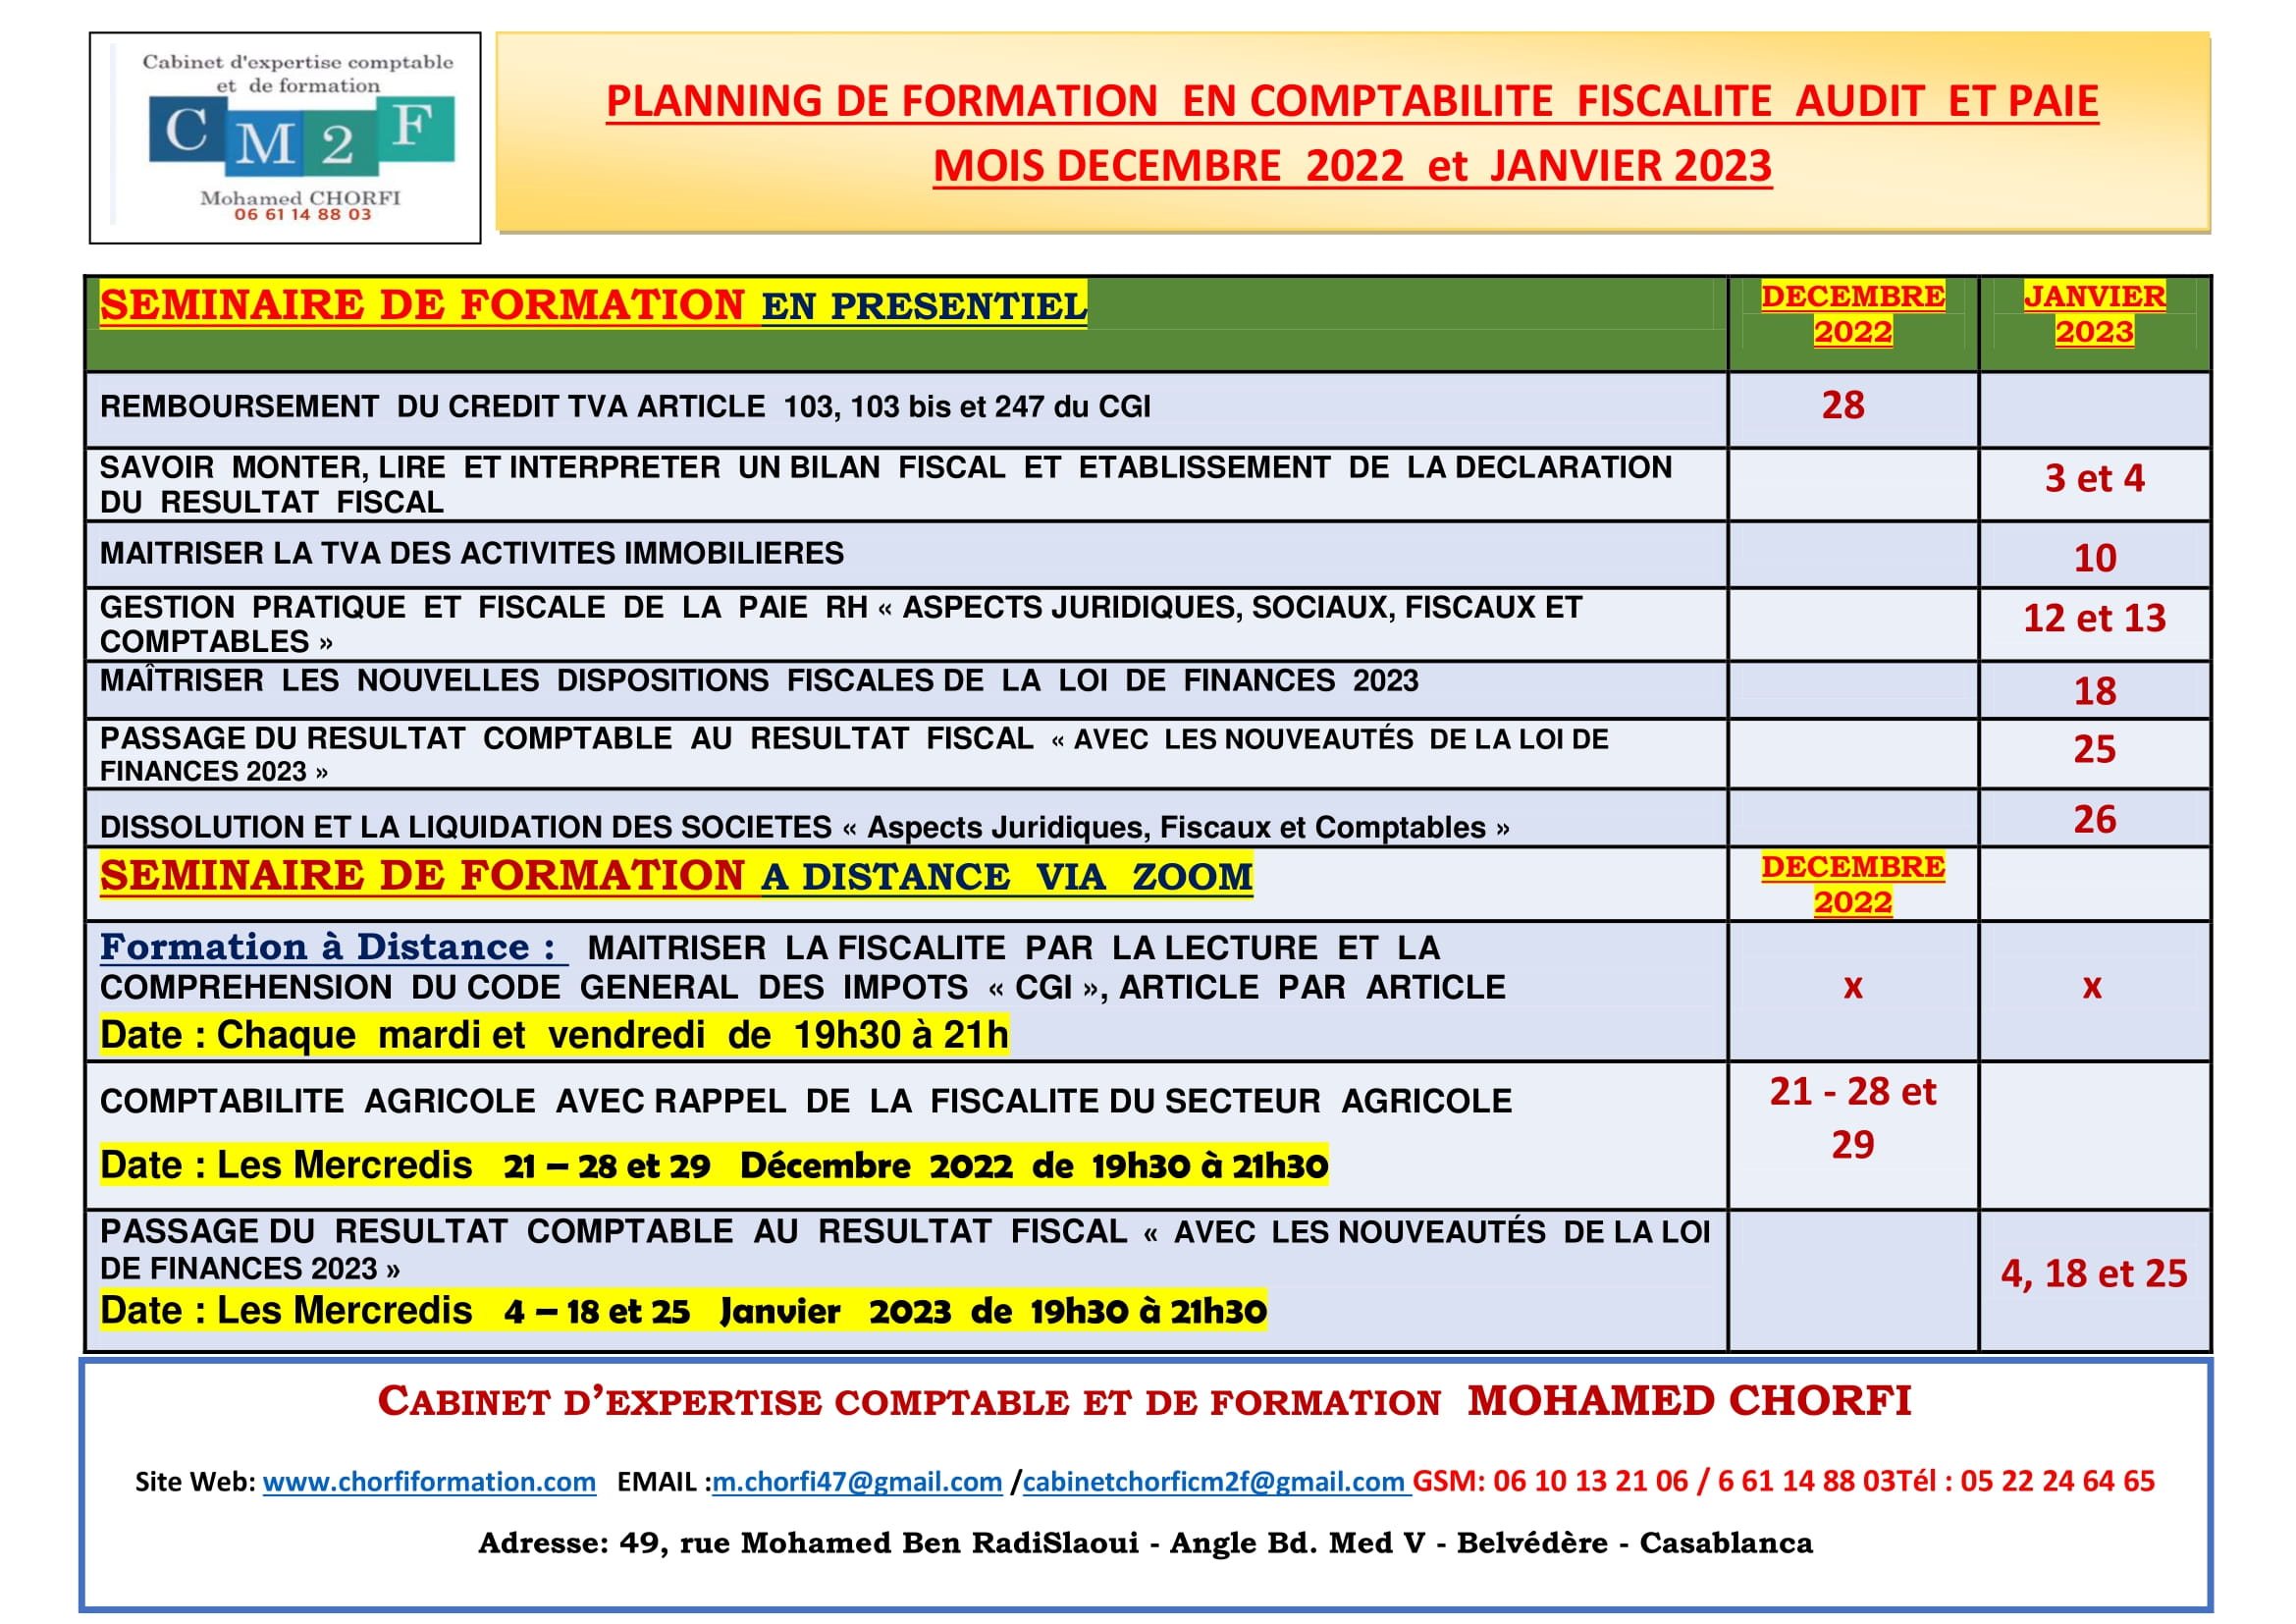 01-PLANNING DES SEMINAIRES DE FORMATION DECEMBRE 2022 et JANVIER 2023-1